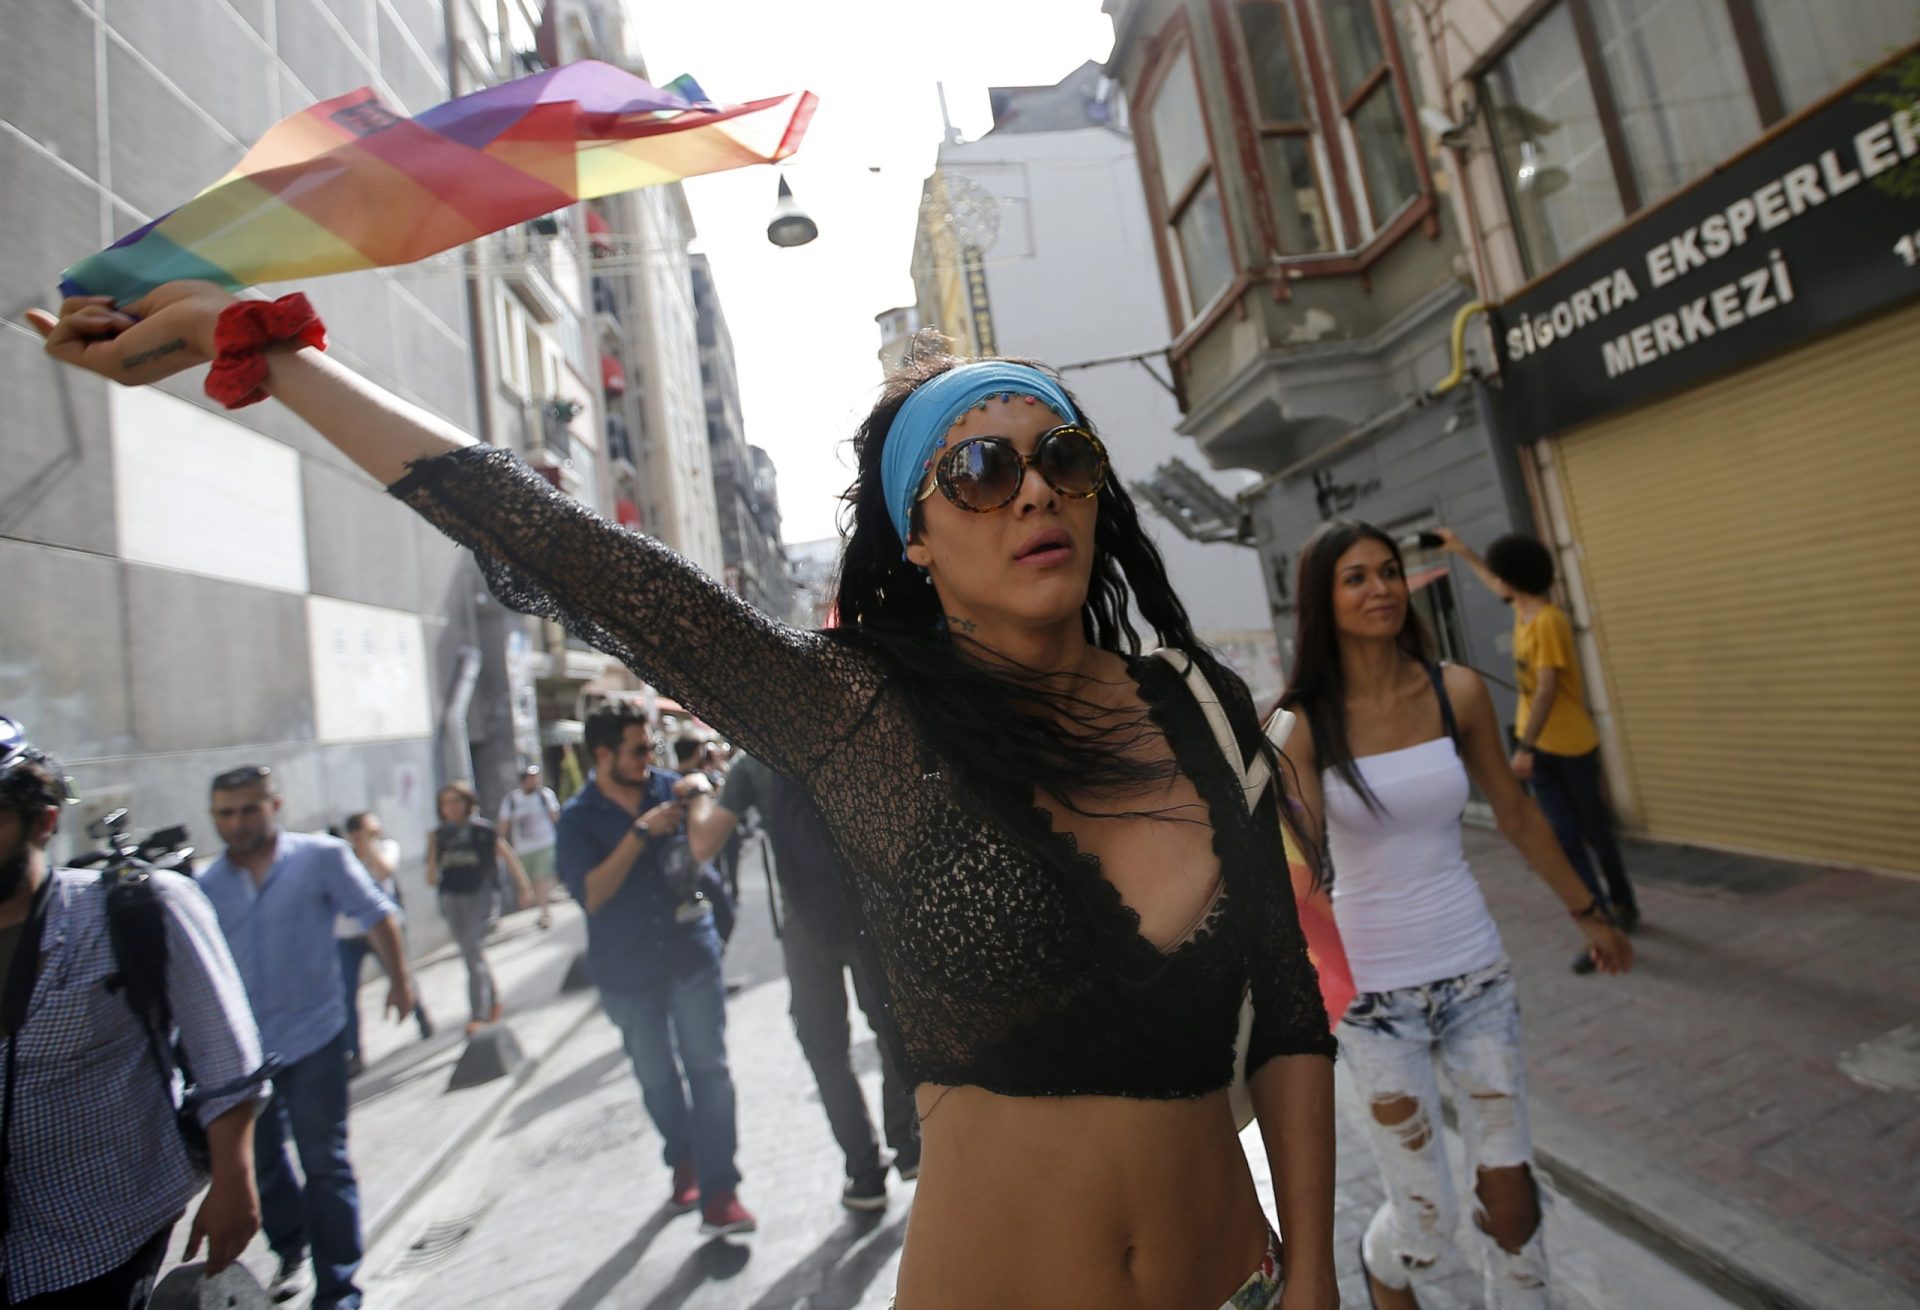 Turquia: manifestação LGBT acaba em confrontos com a polícia